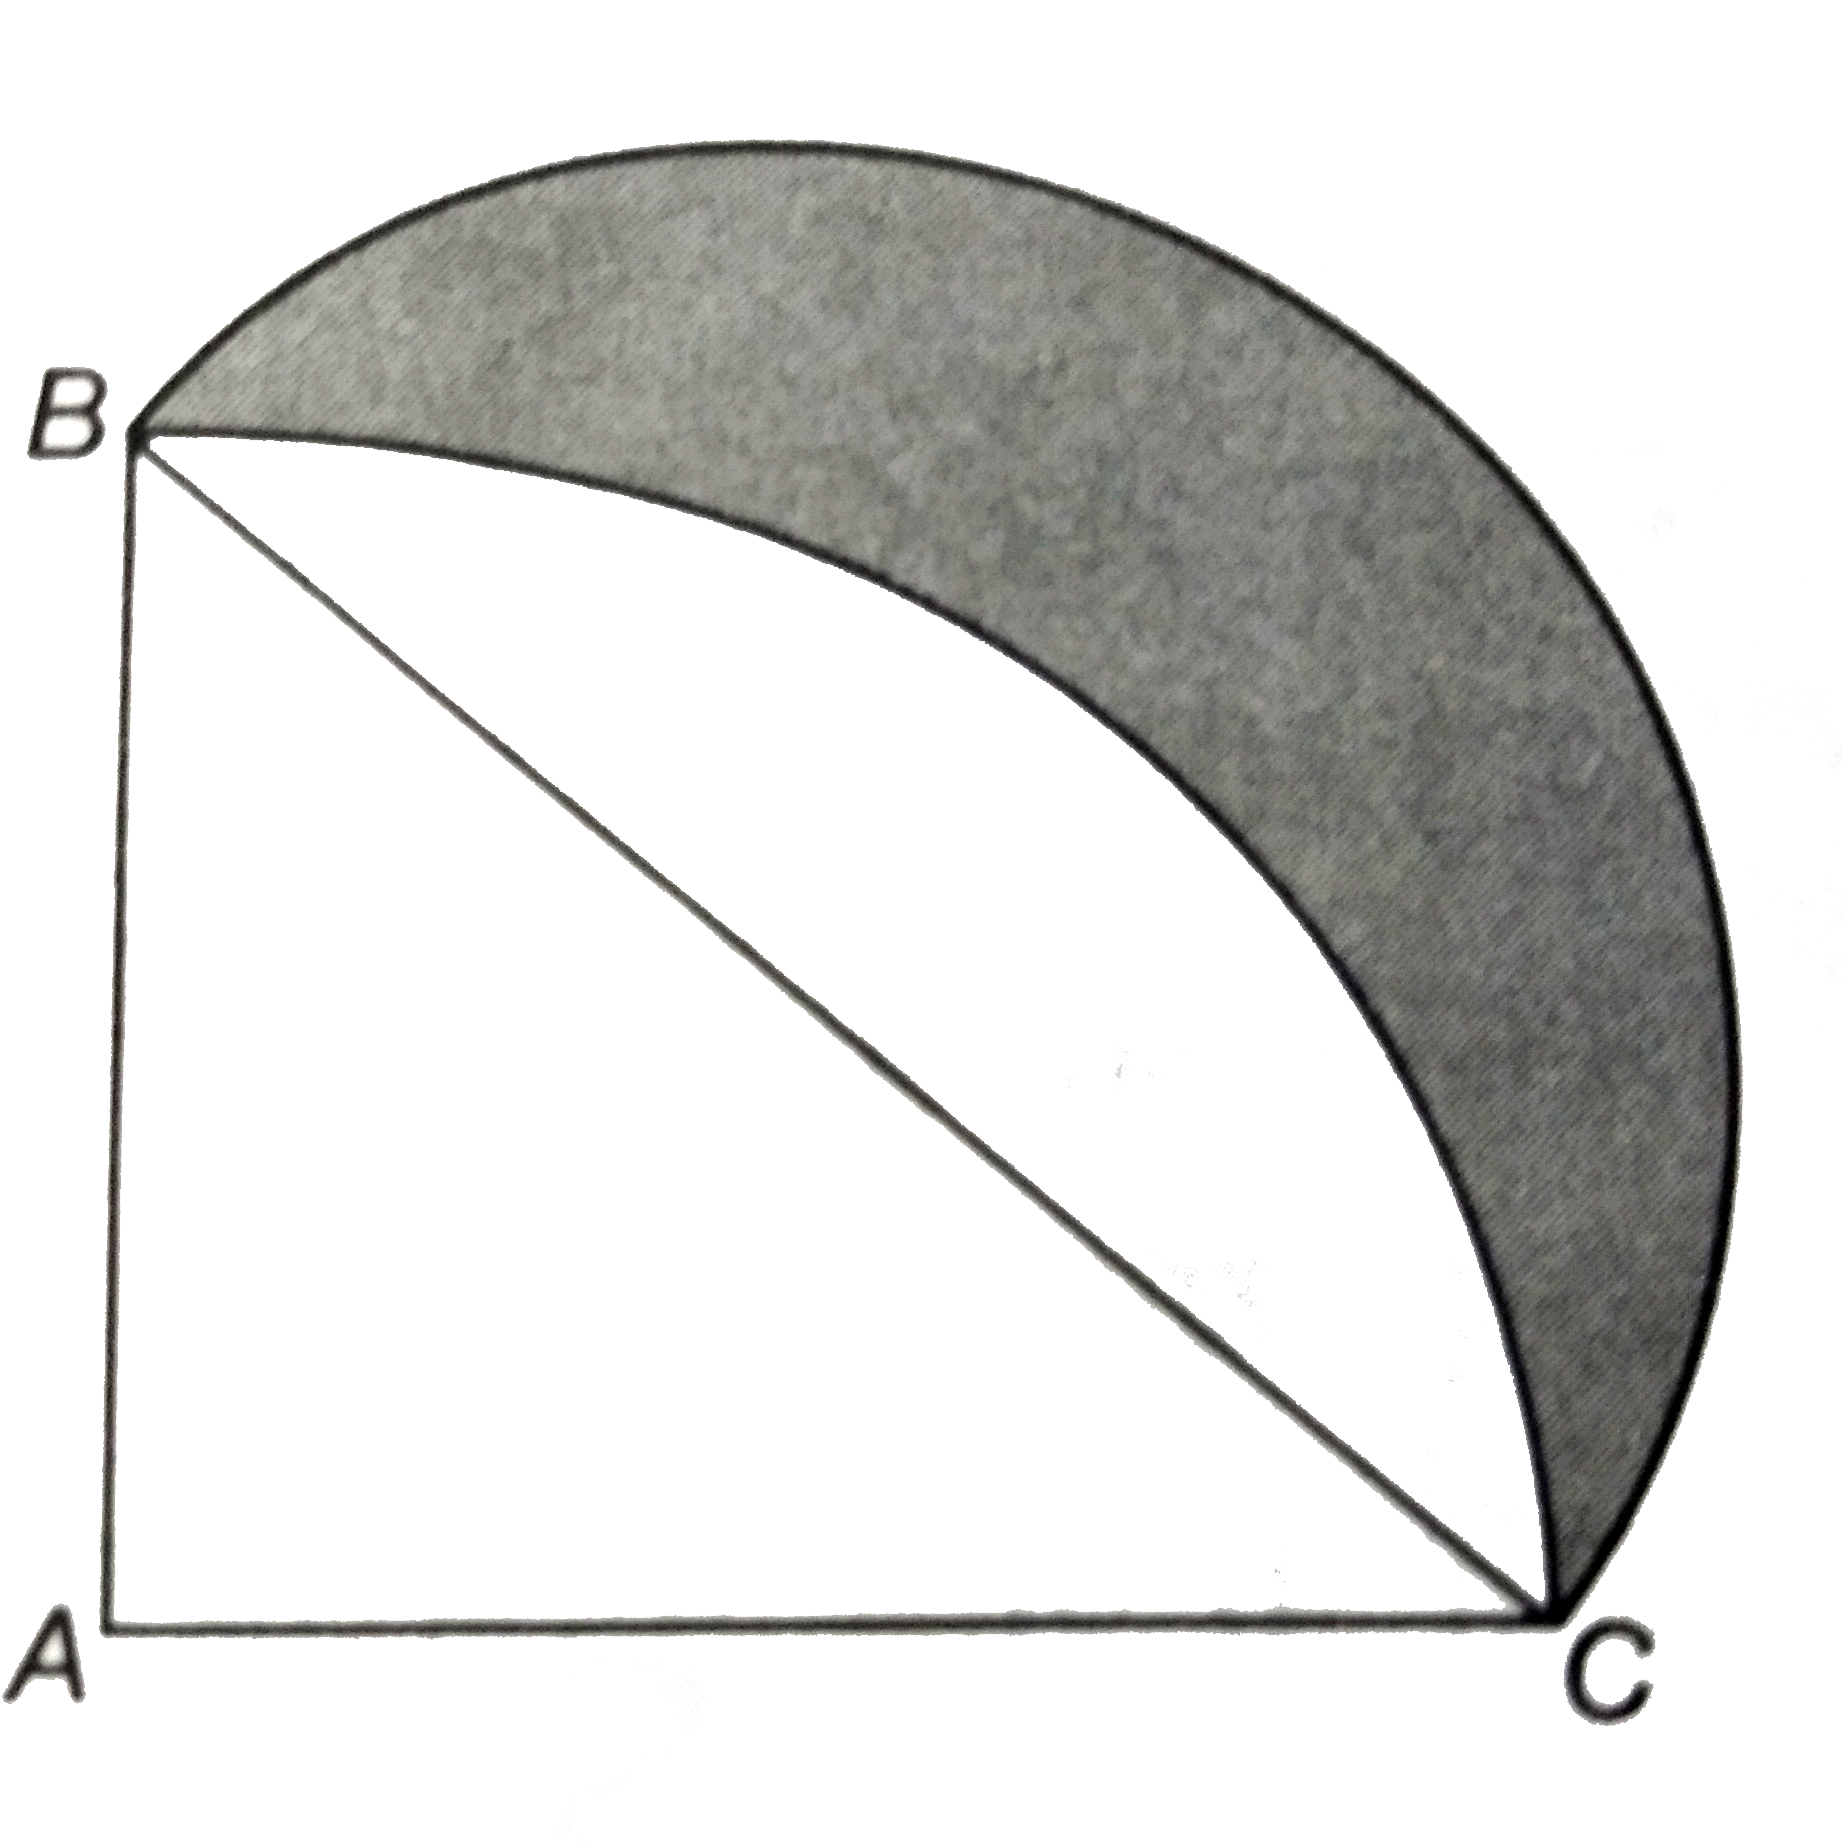 आकृति में , ABC  त्रिज्या  14  सेमी वाले एक वृत्त का चतुर्थांश  है तथा  BC  को व्यास  मान कर एक अर्धवृत्त खींचा  गया है । छायांकित  भाग का क्षेत्रफल ज्ञात  कीजिए ।